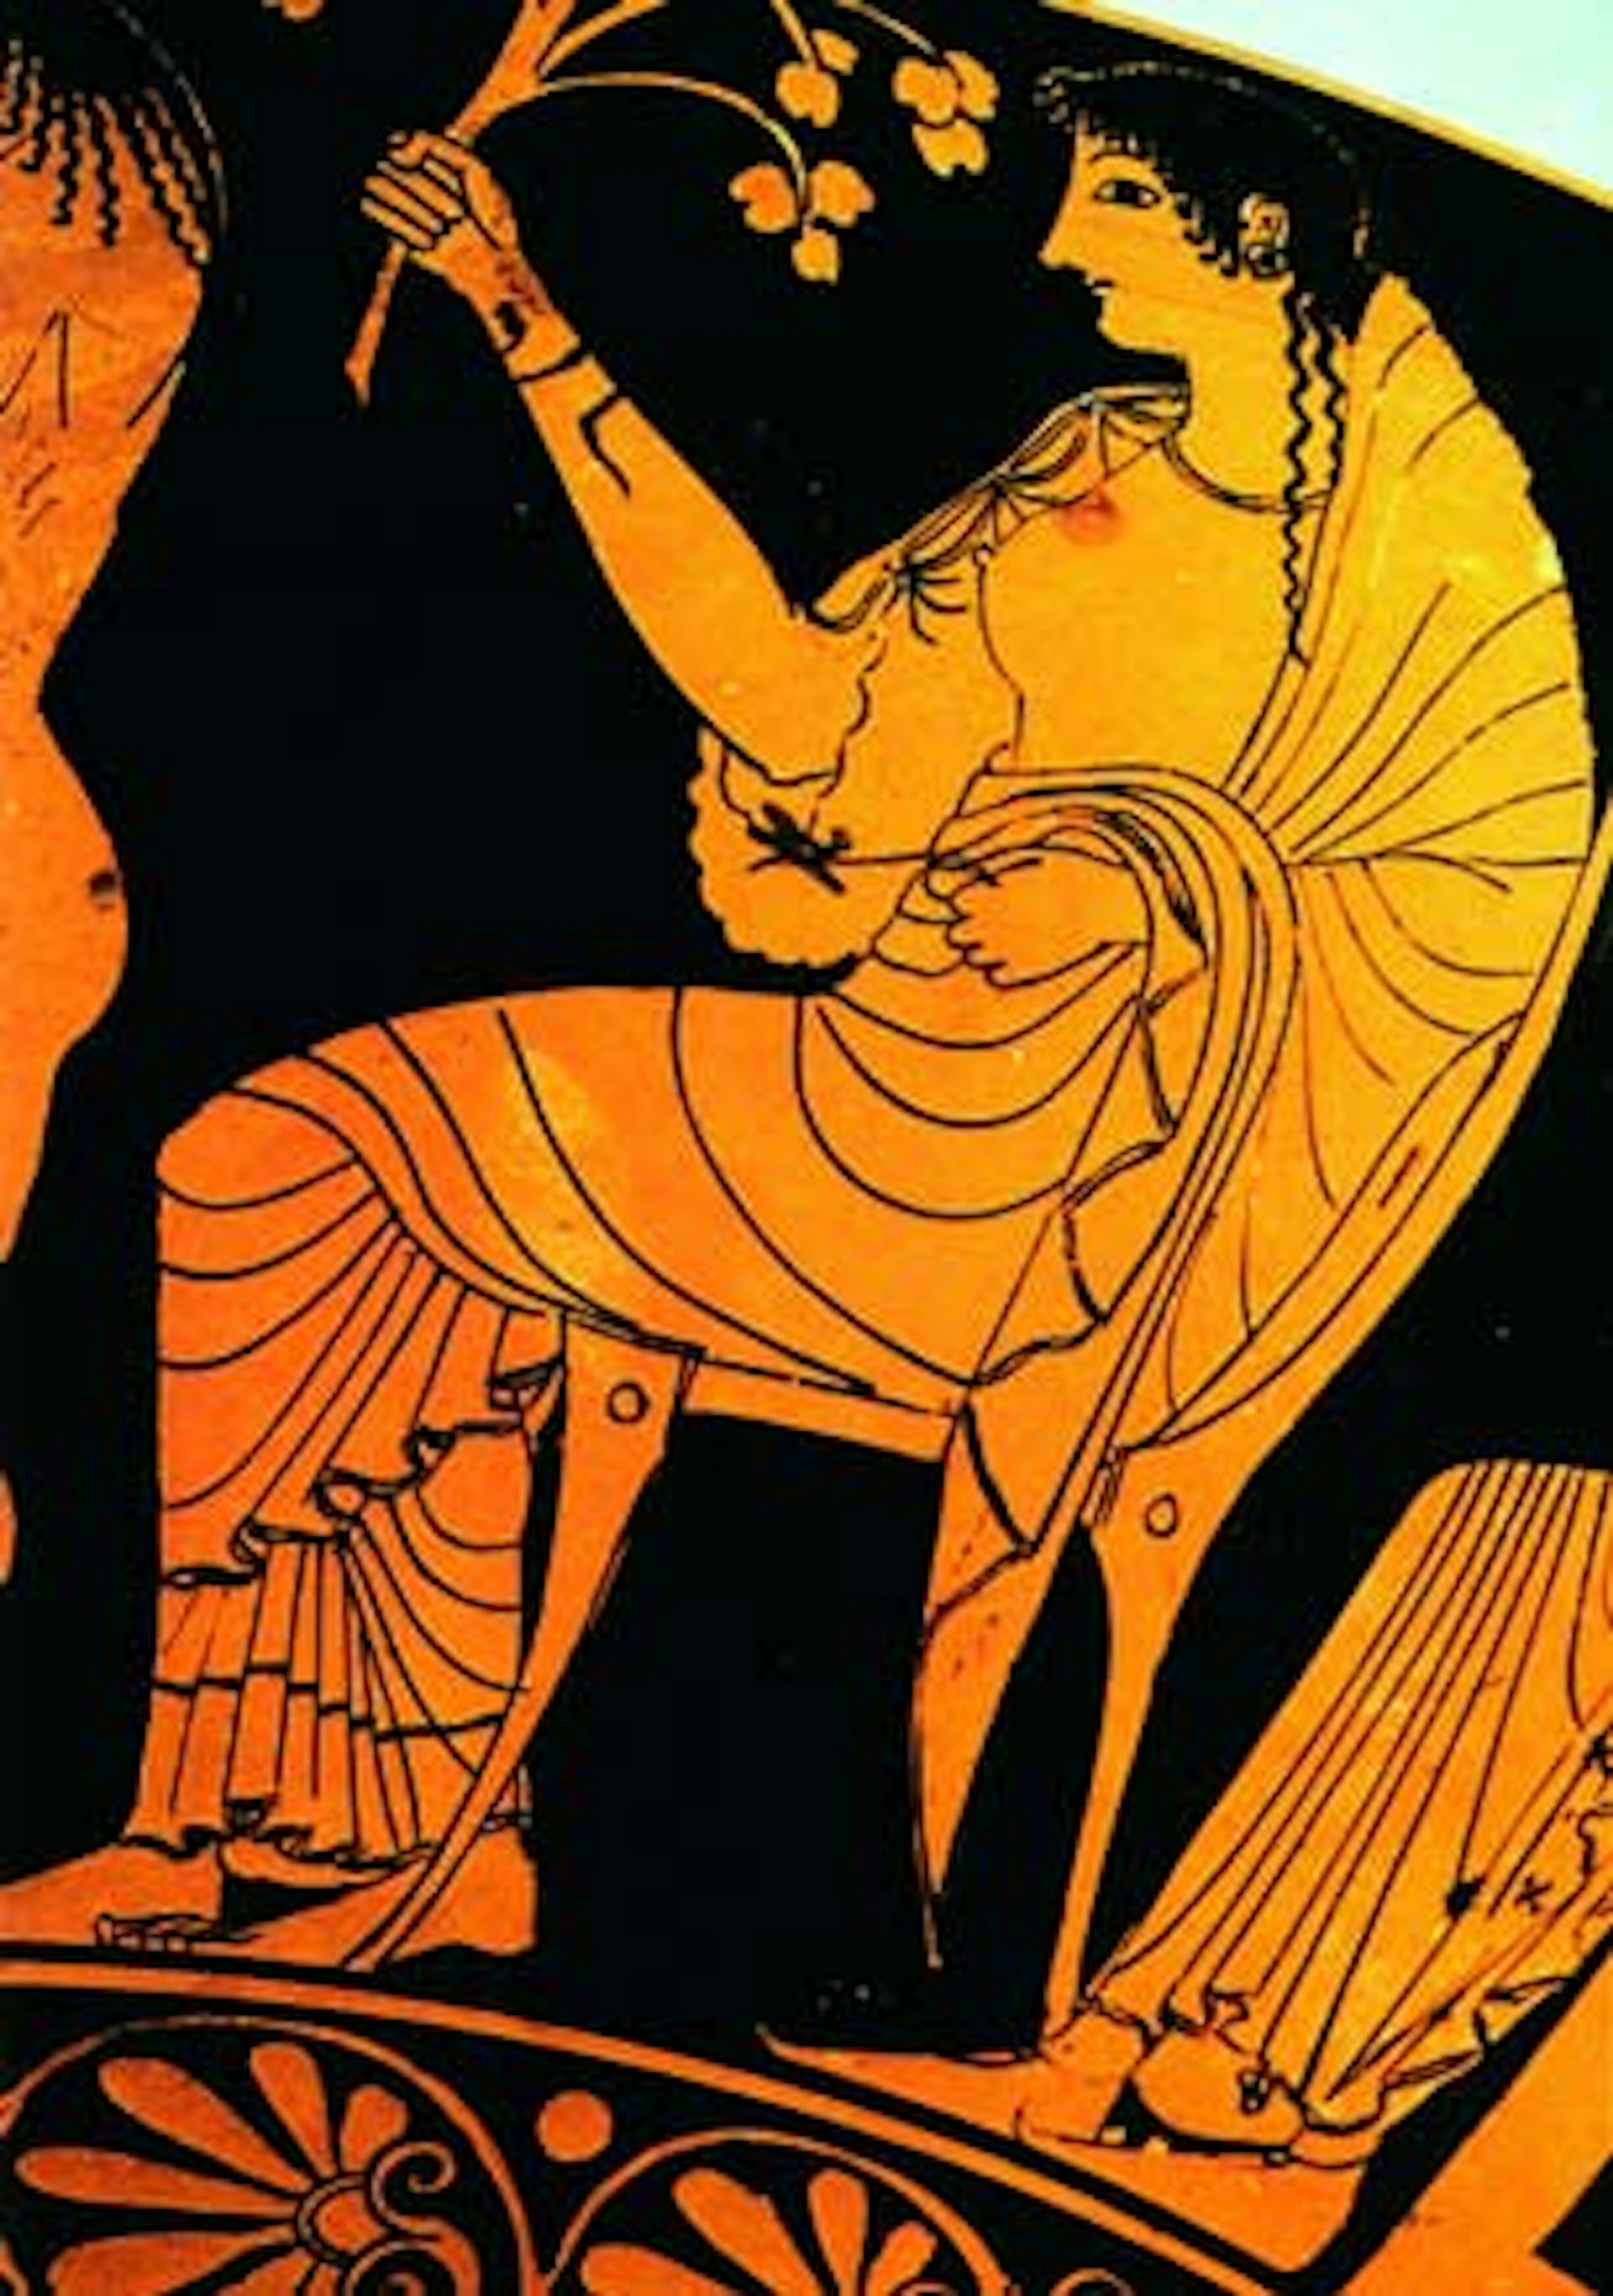 Kylix Hestia 5th century BCE